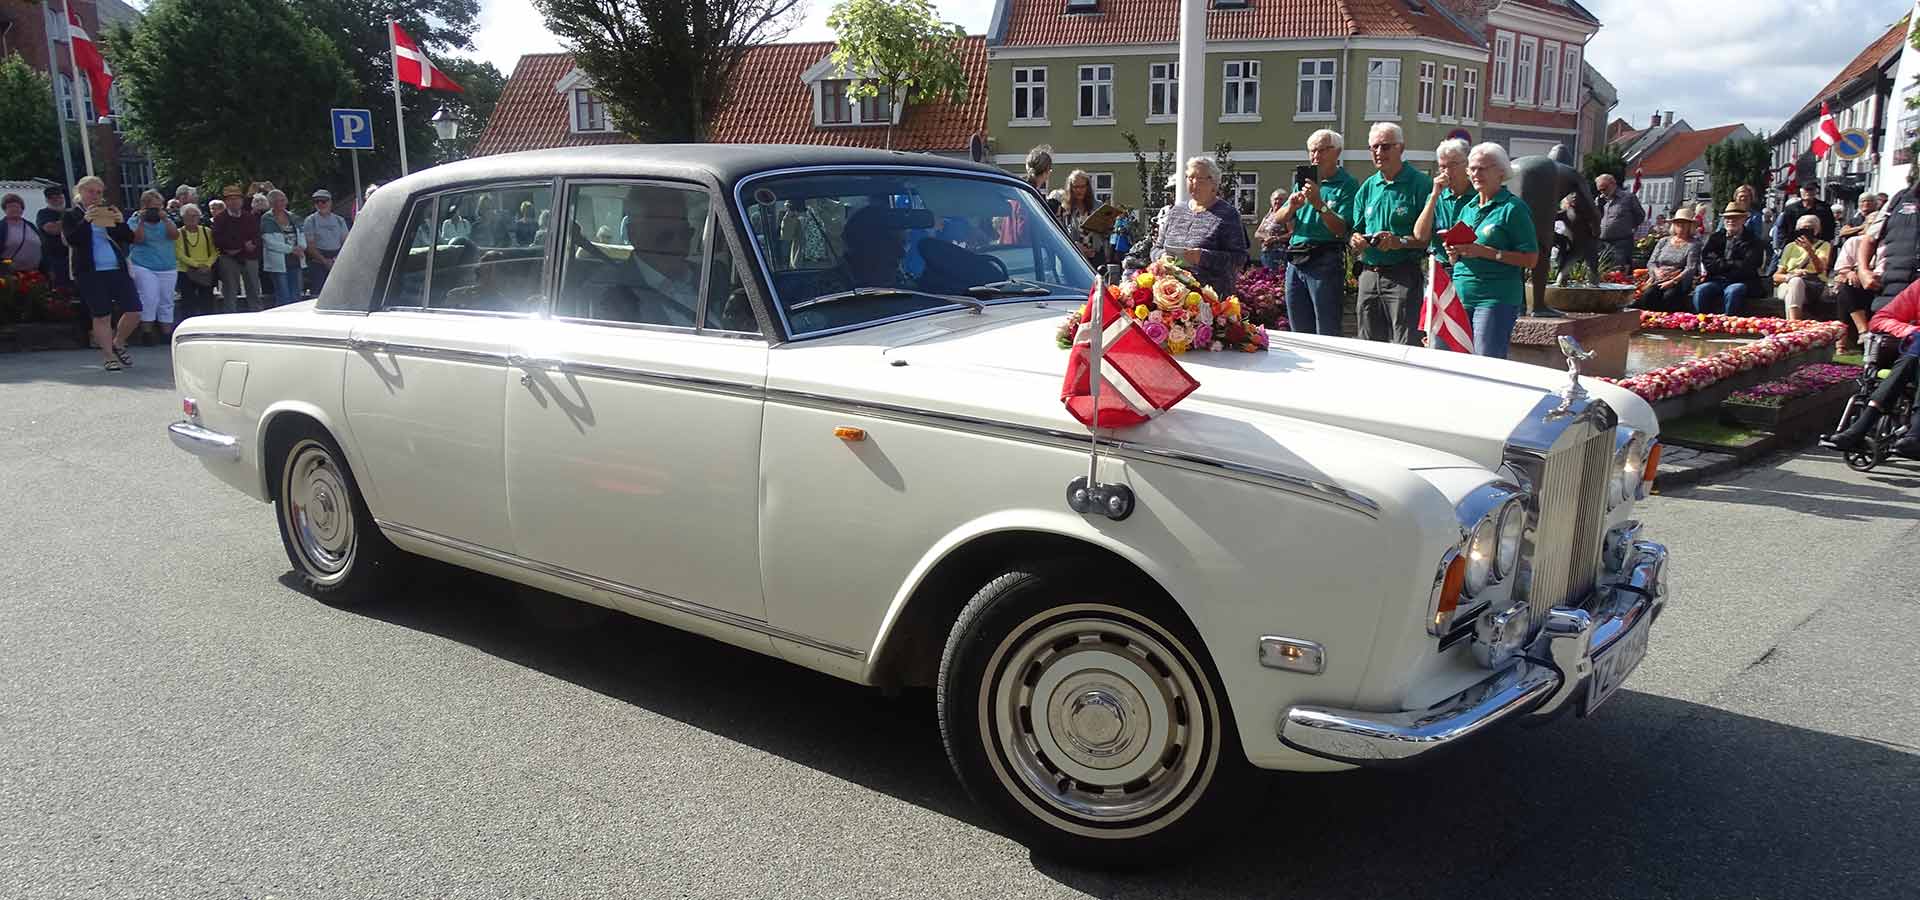 Fin gammel bil havde fundet vej til Rosenfestivalen i Bogense